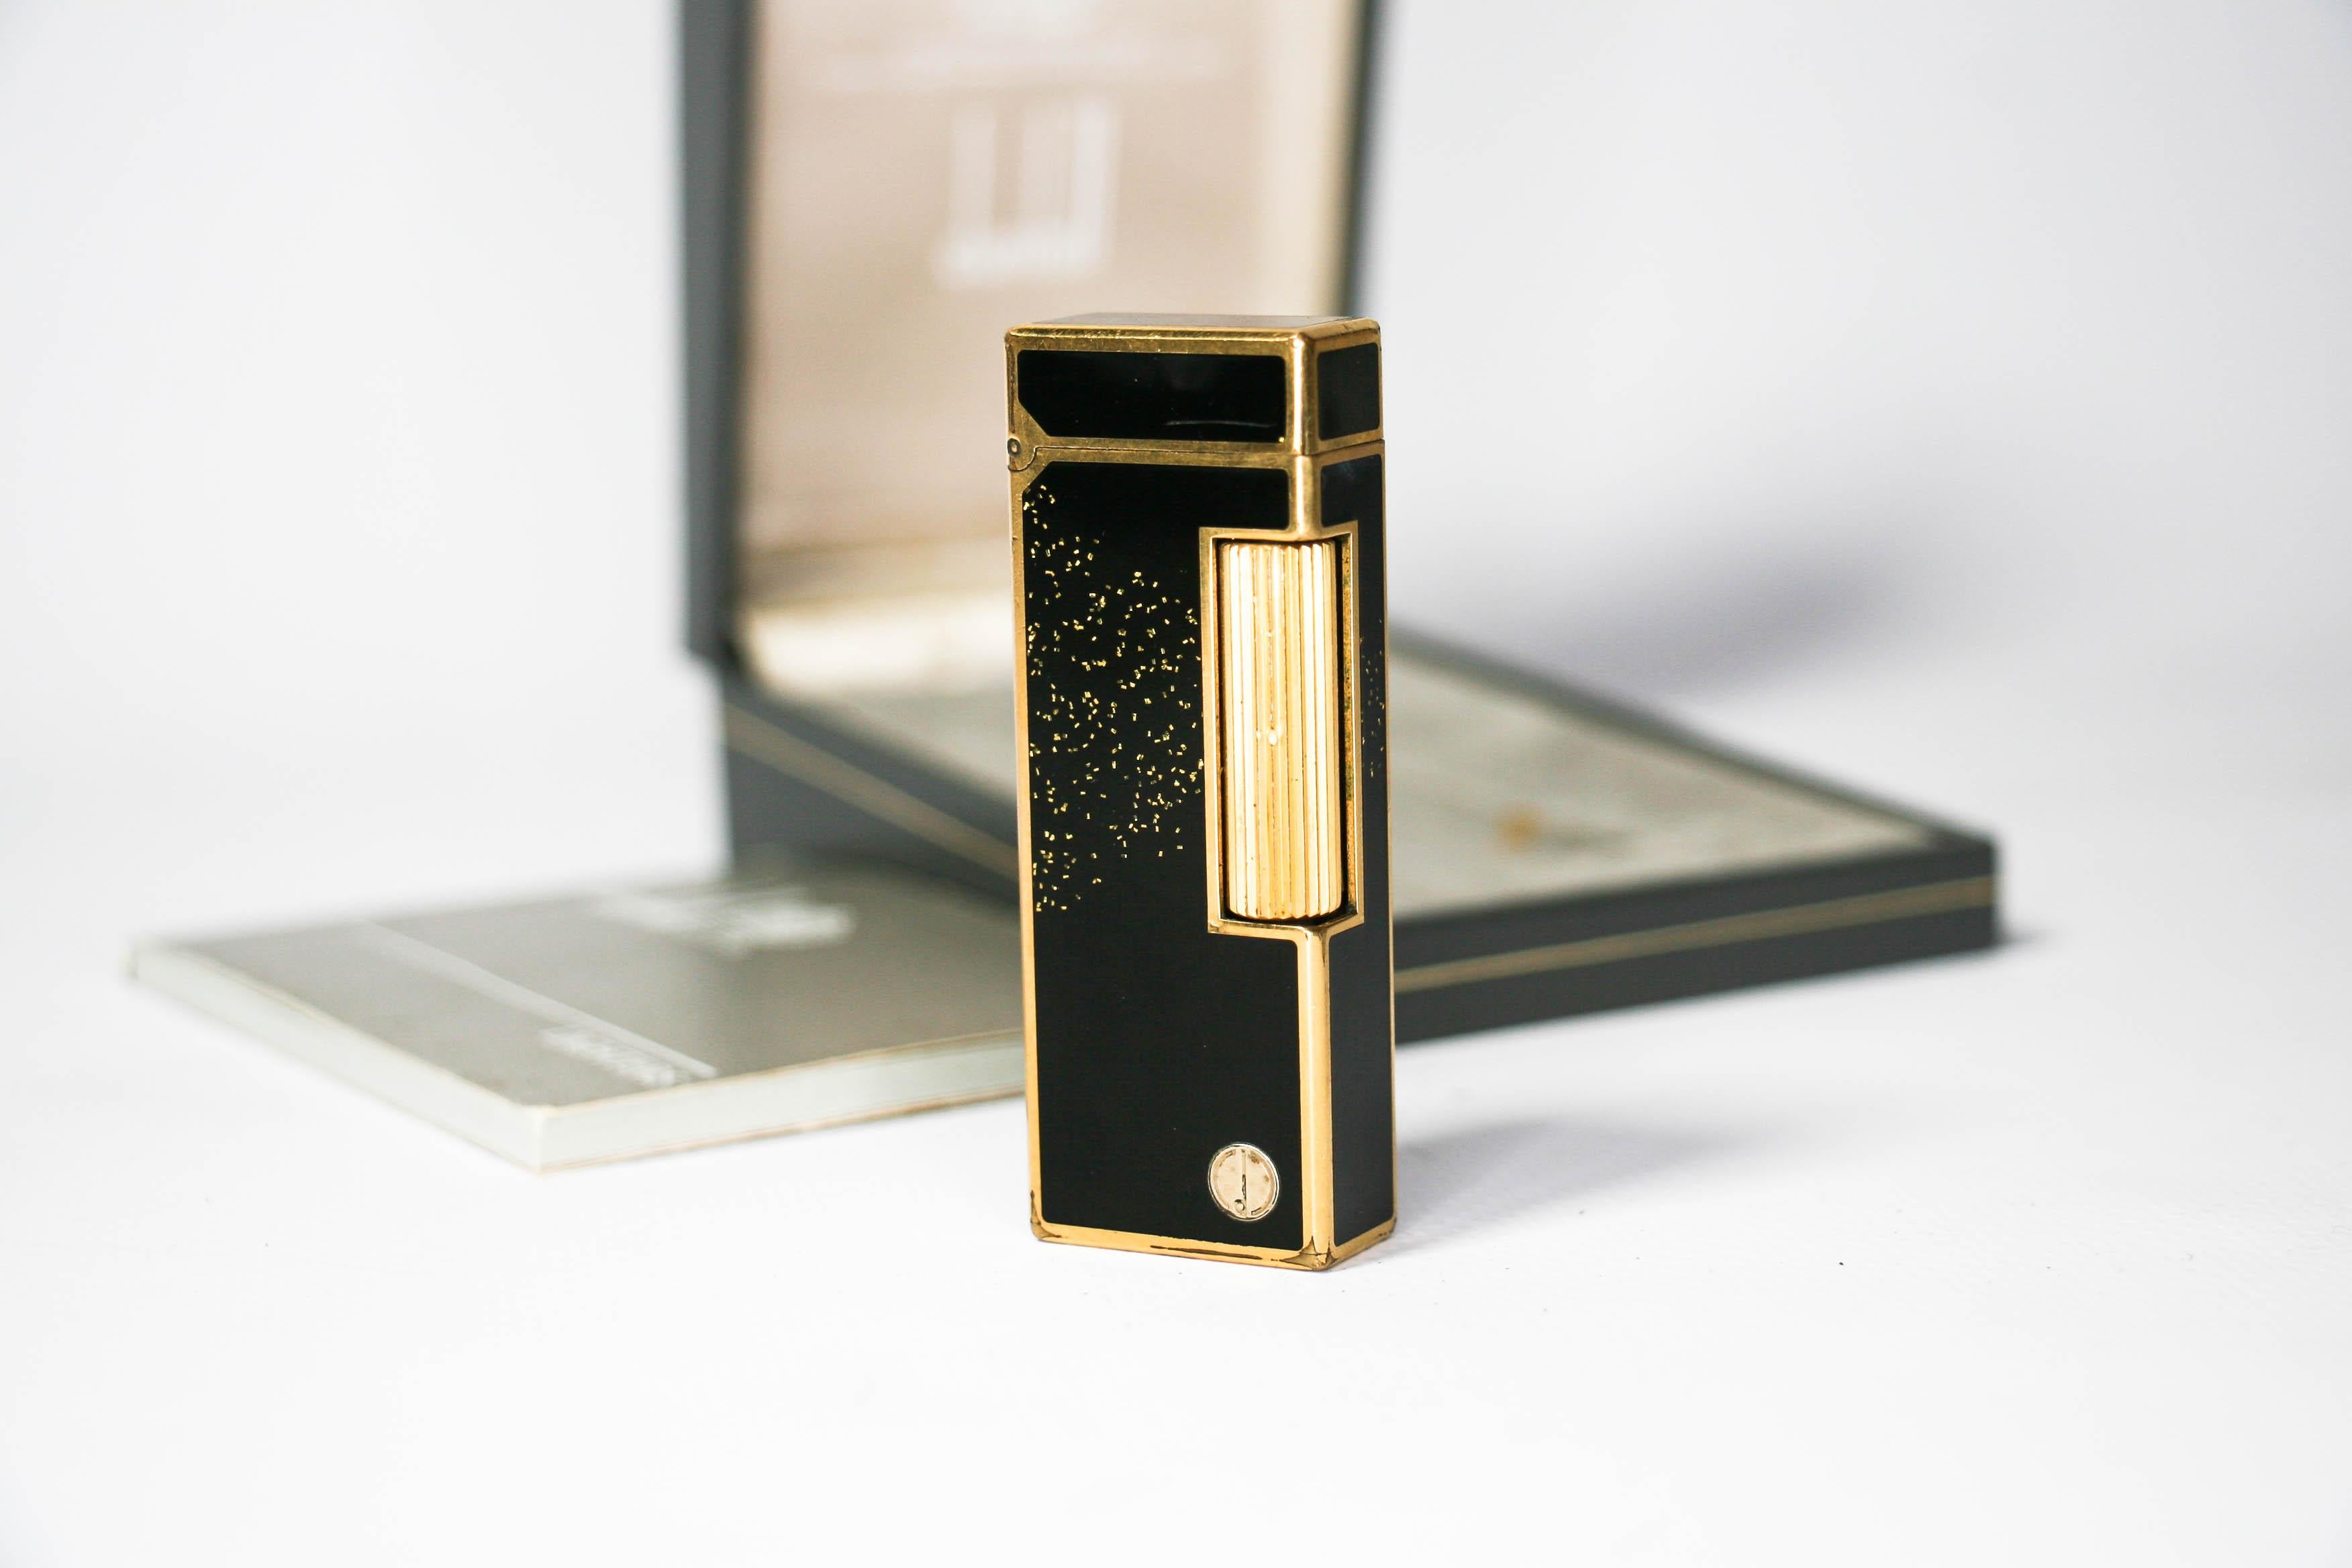 Vintage Dunhill Rollagas lighter Gold Dust In Box 1980

Le nom emblématique de Dunhill est connu pour ses briquets et autres accessoires de fumeur de qualité et de bonne facture. L'origine de la société remonte à l'ouverture par Alfred Dunhill de